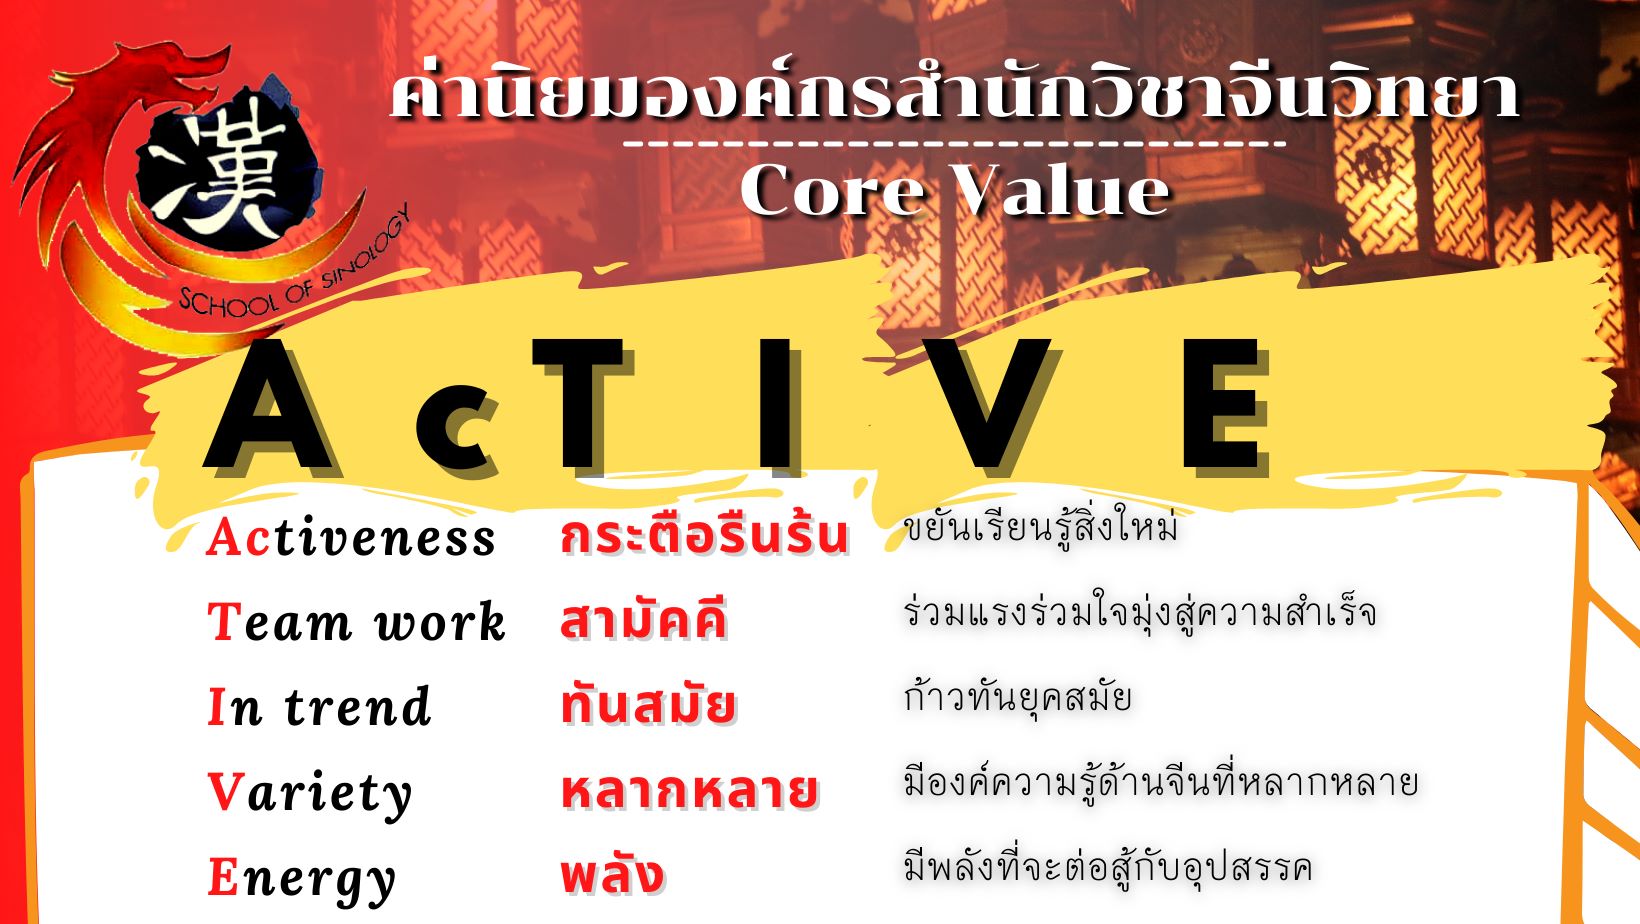 ประกาศค่านิยมองค์กรสำนักวิชาจีนวิทยา (Core Value)